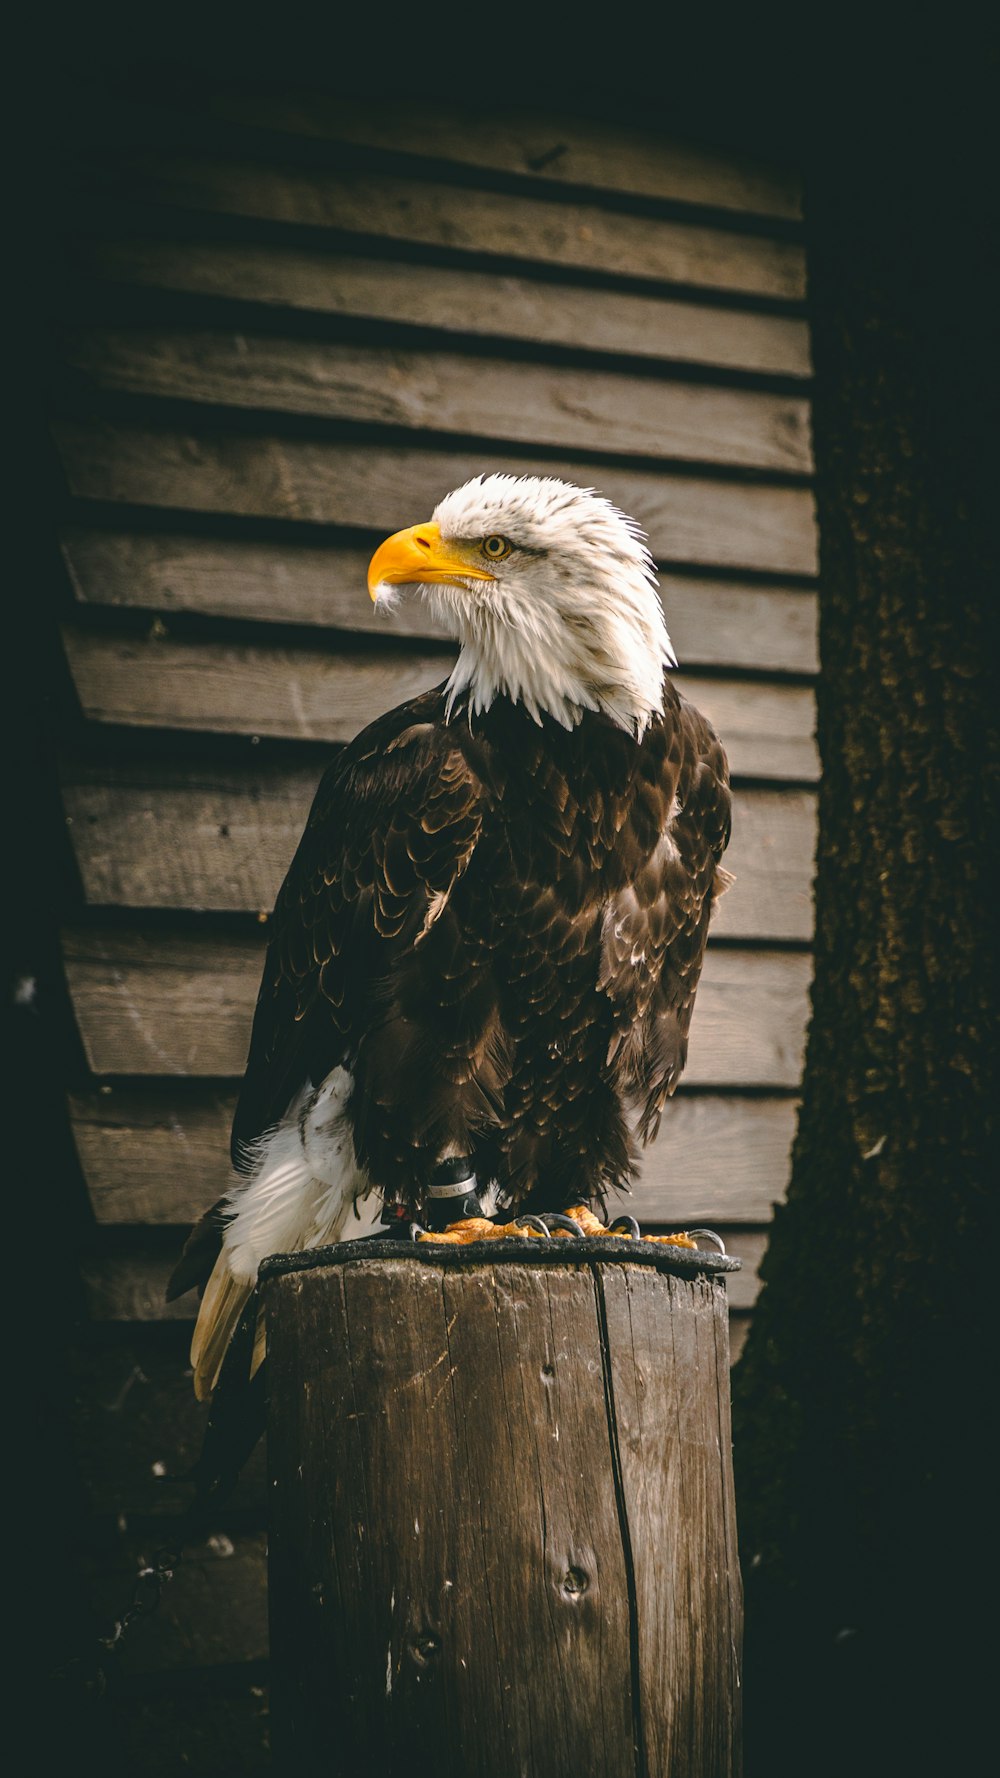 águila blanca y negra sobre valla de madera negra